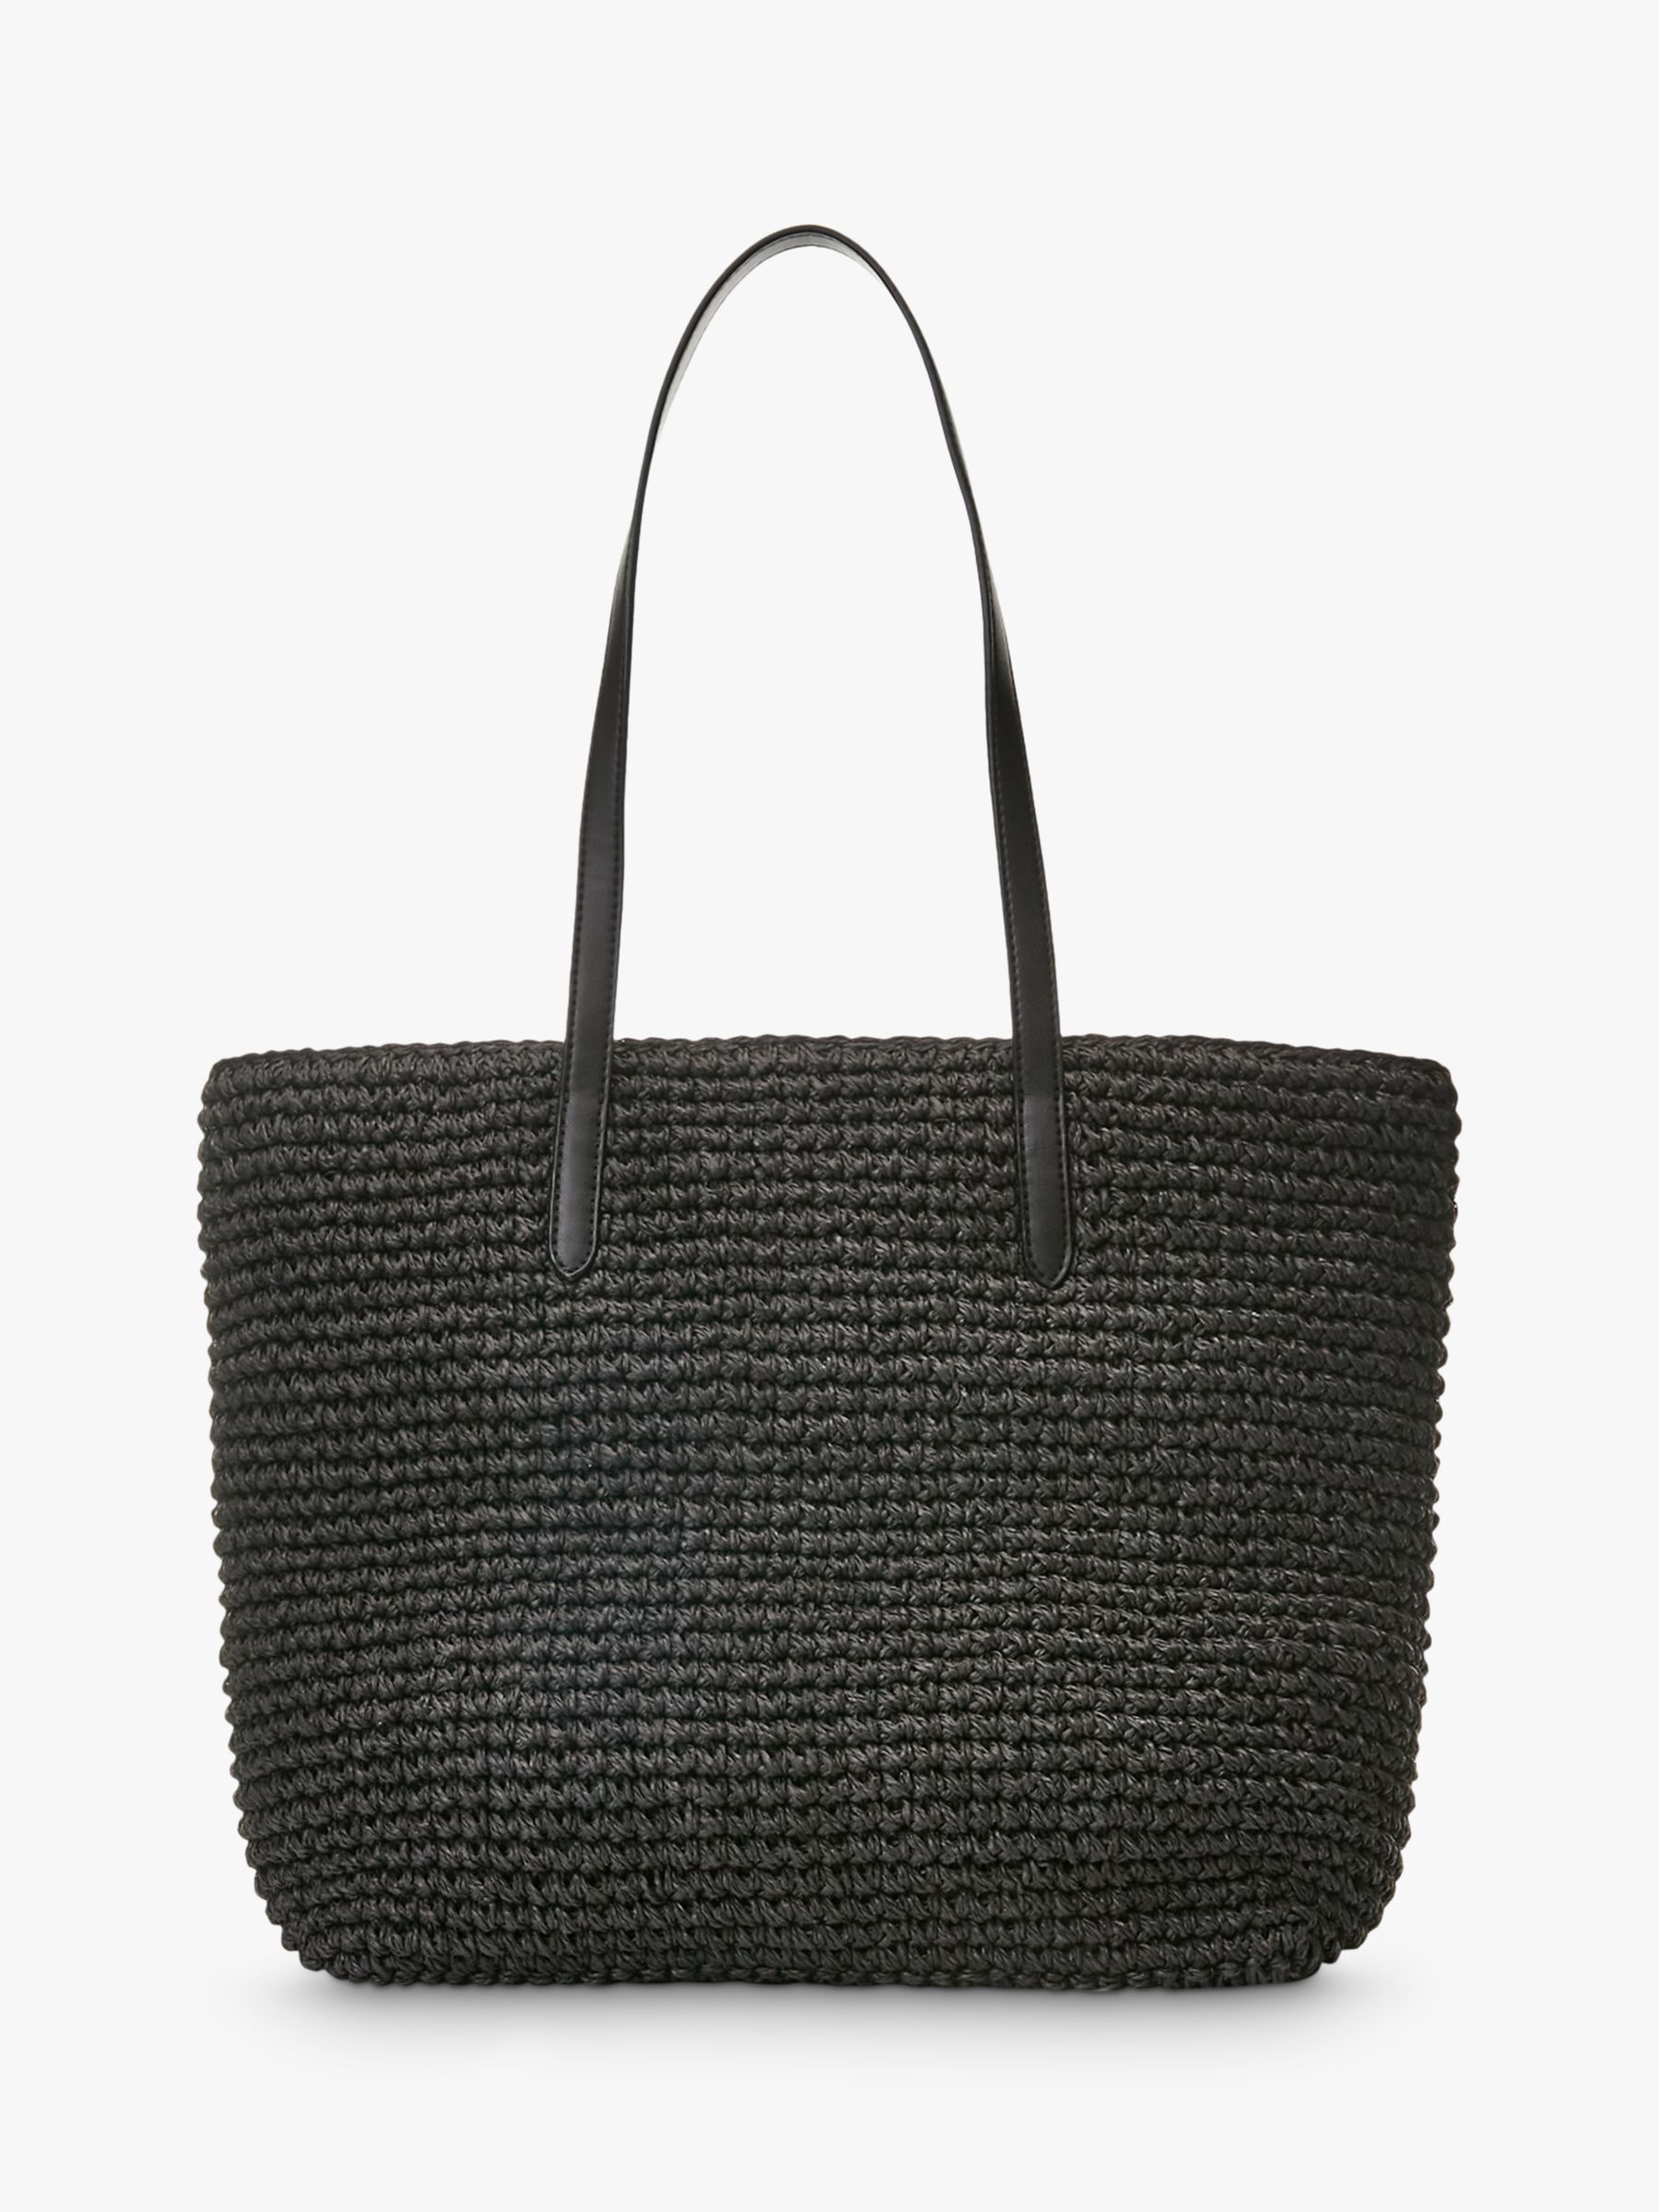 Lauren Ralph Lauren Straw Tote Bag, Black at John Lewis & Partners